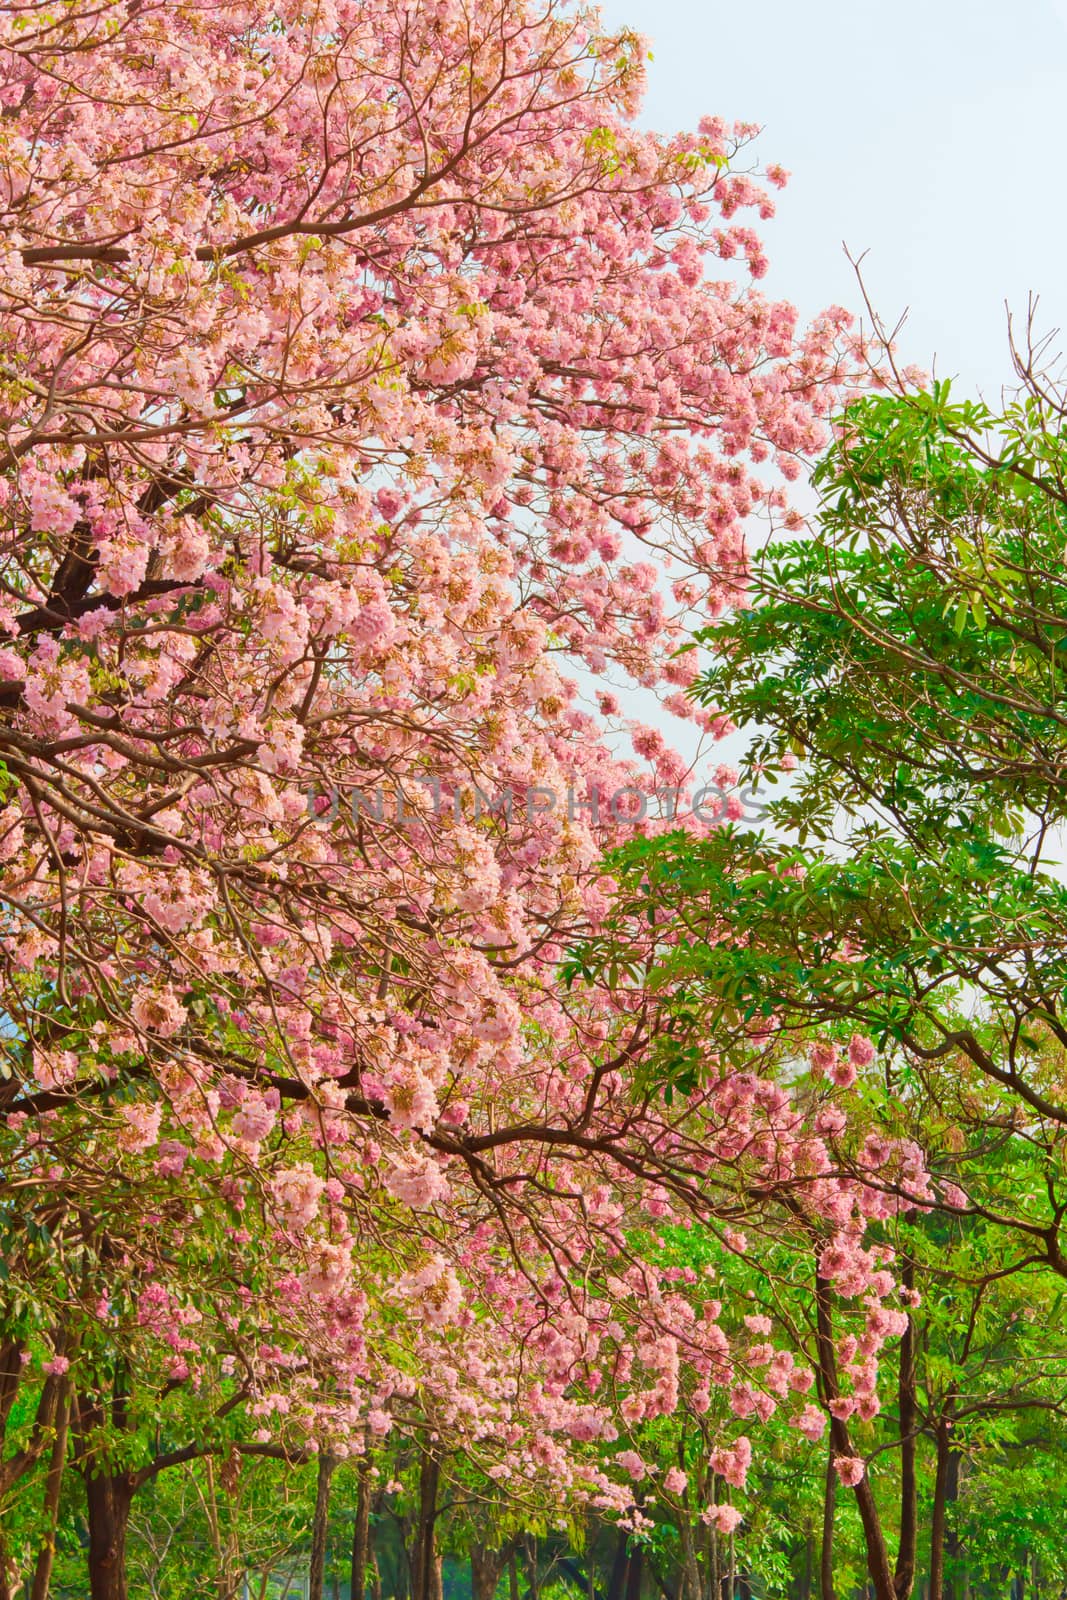 Pink Tabebuia flower blooming in Spring season.